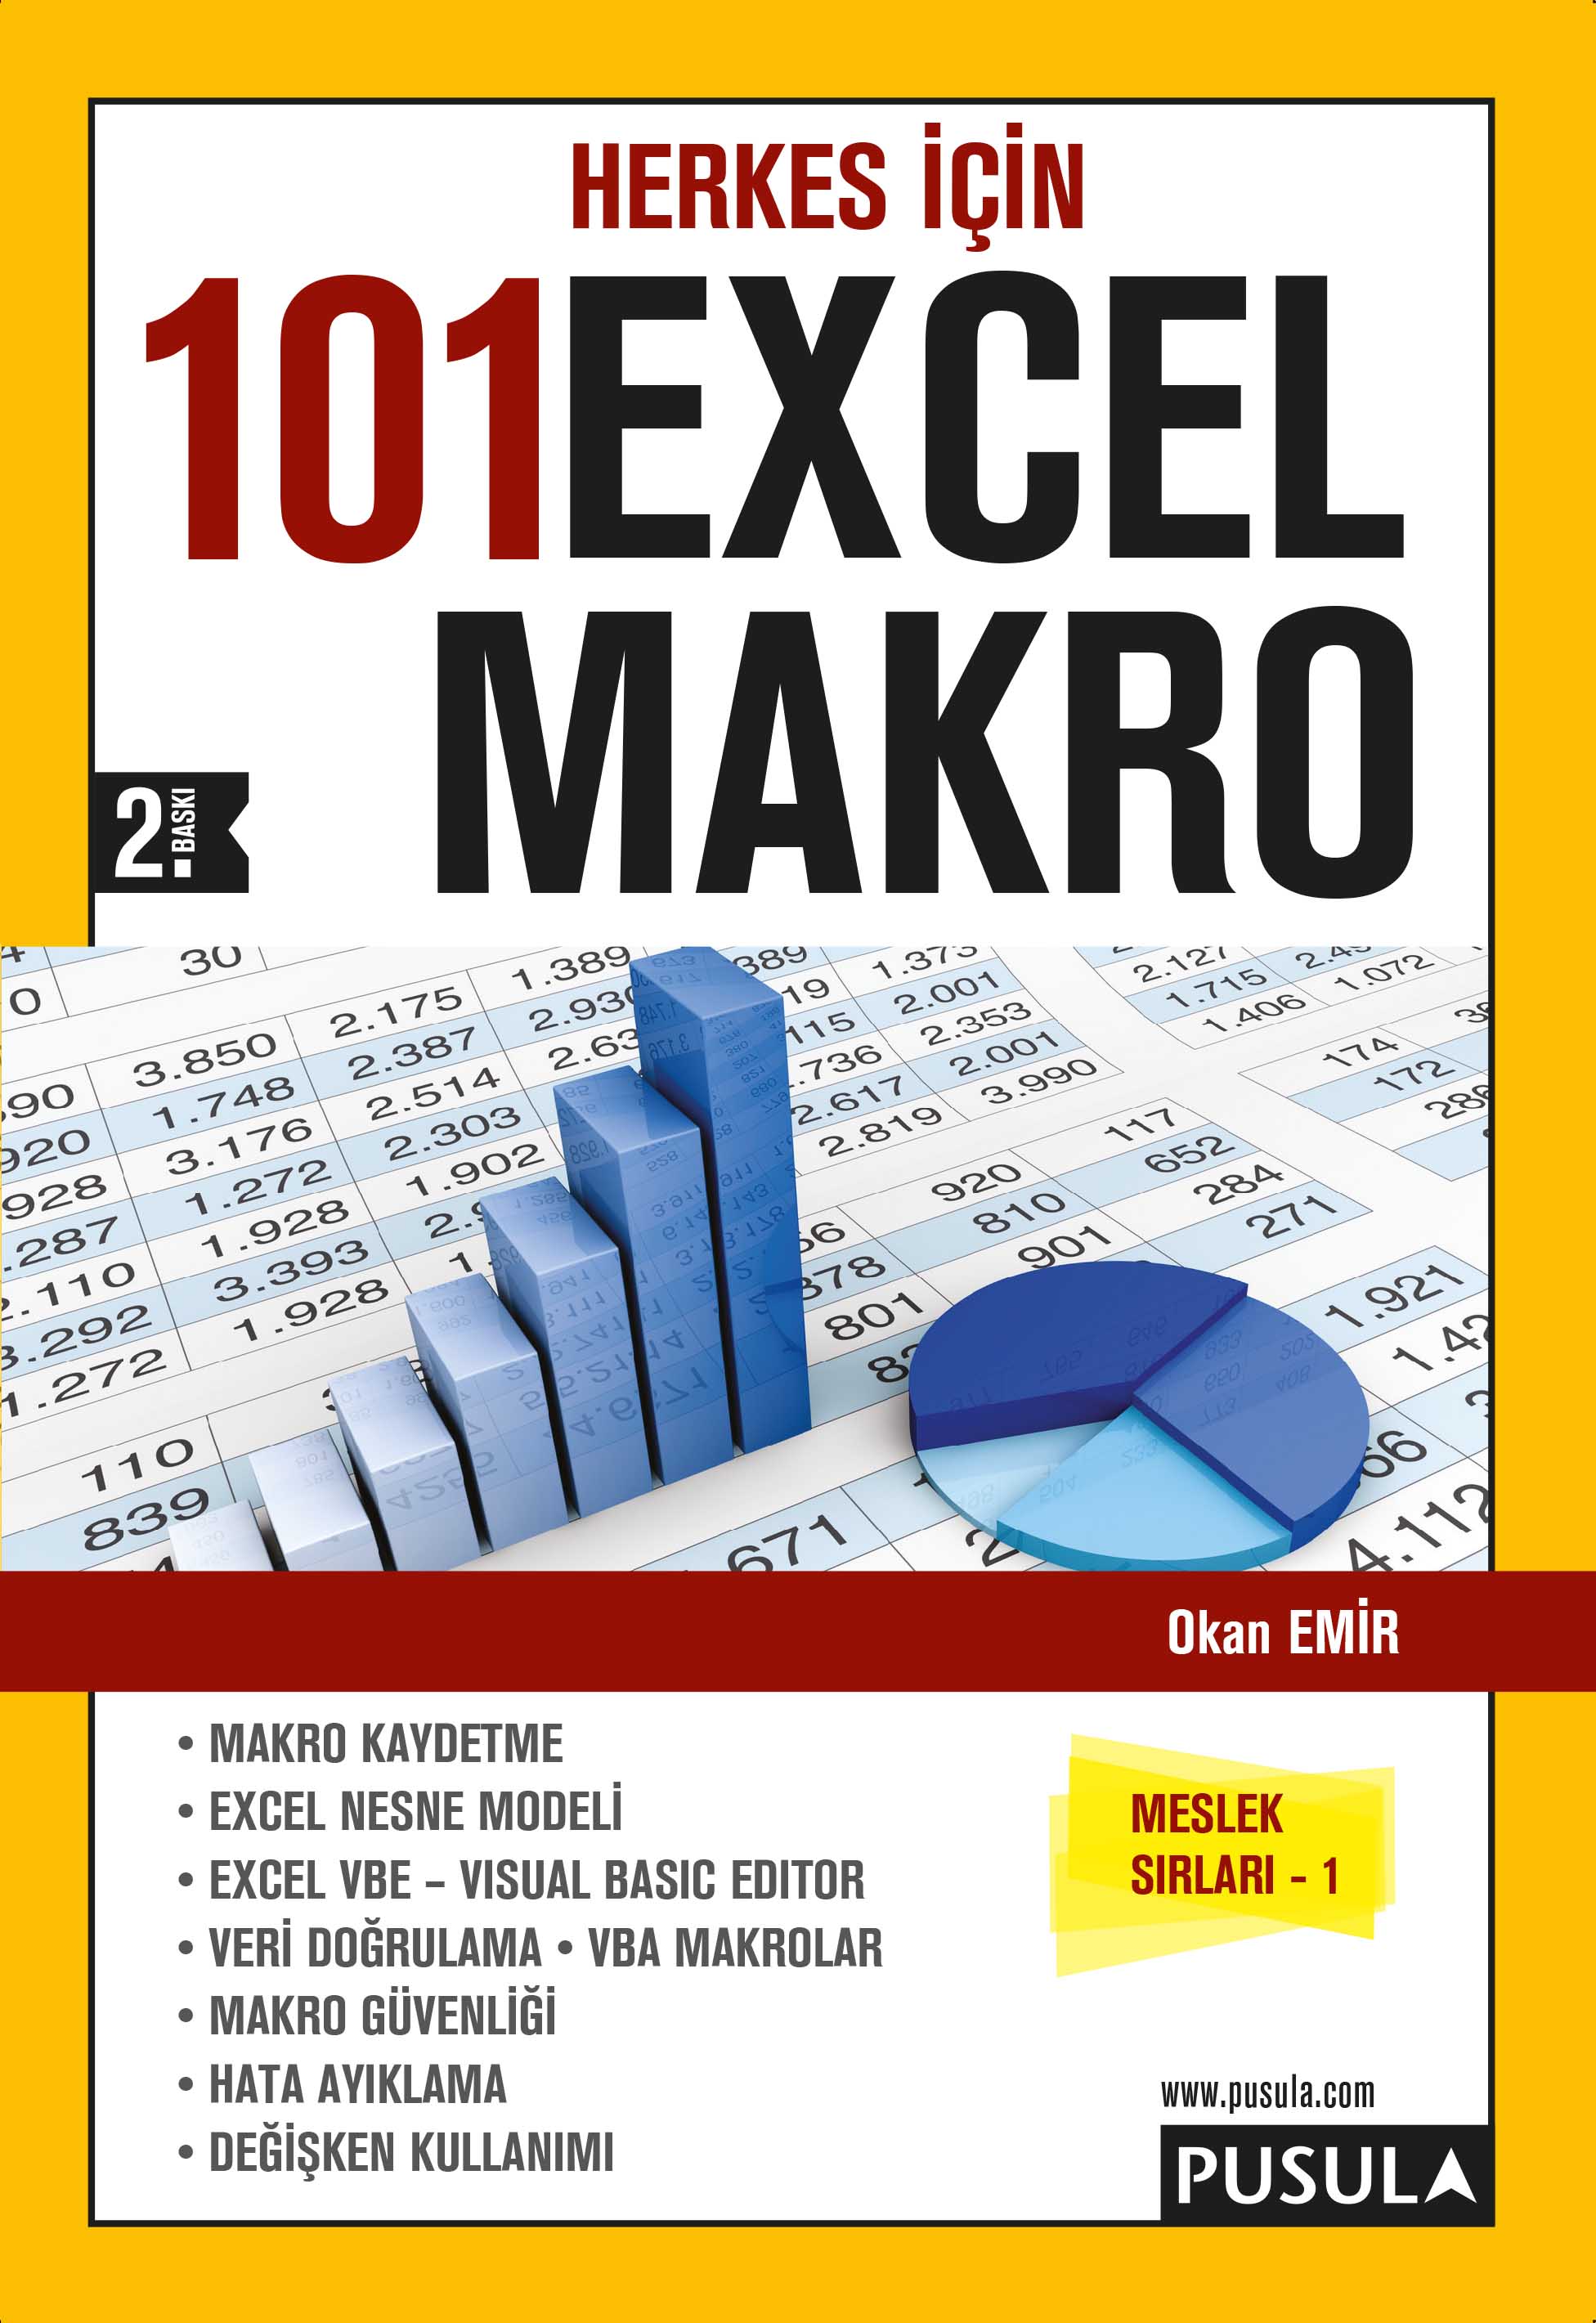 Herkes İçin 101 Excel Makro 2.baskı